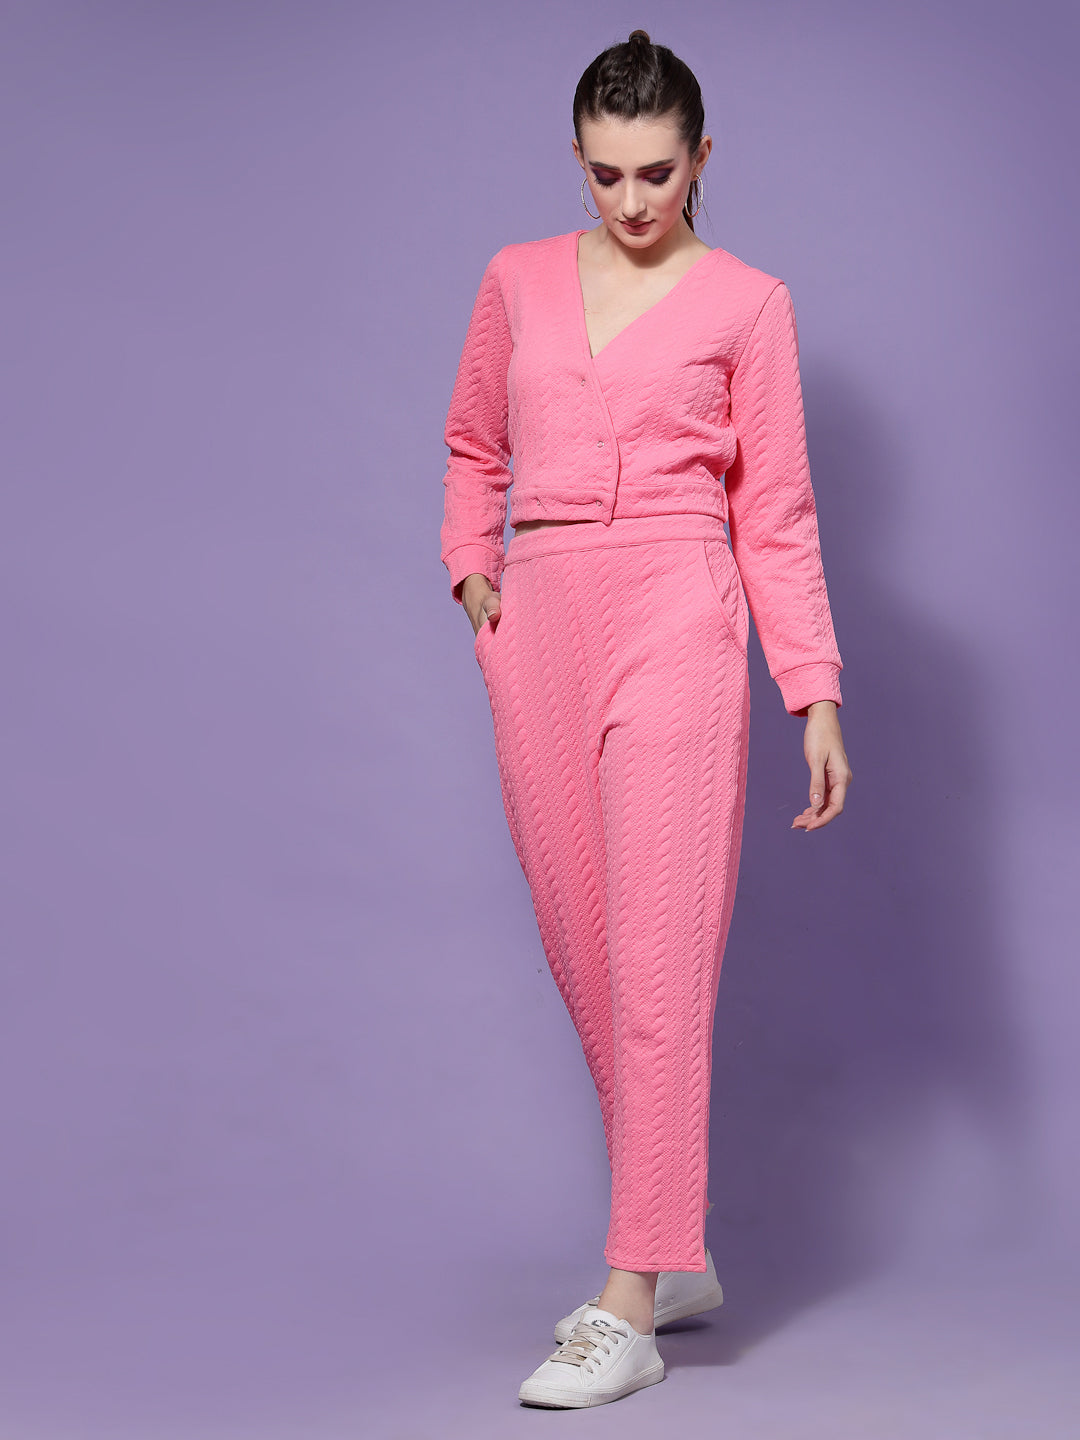 Athena Women Pink Self Design Co-Ords Set - Athena Lifestyle